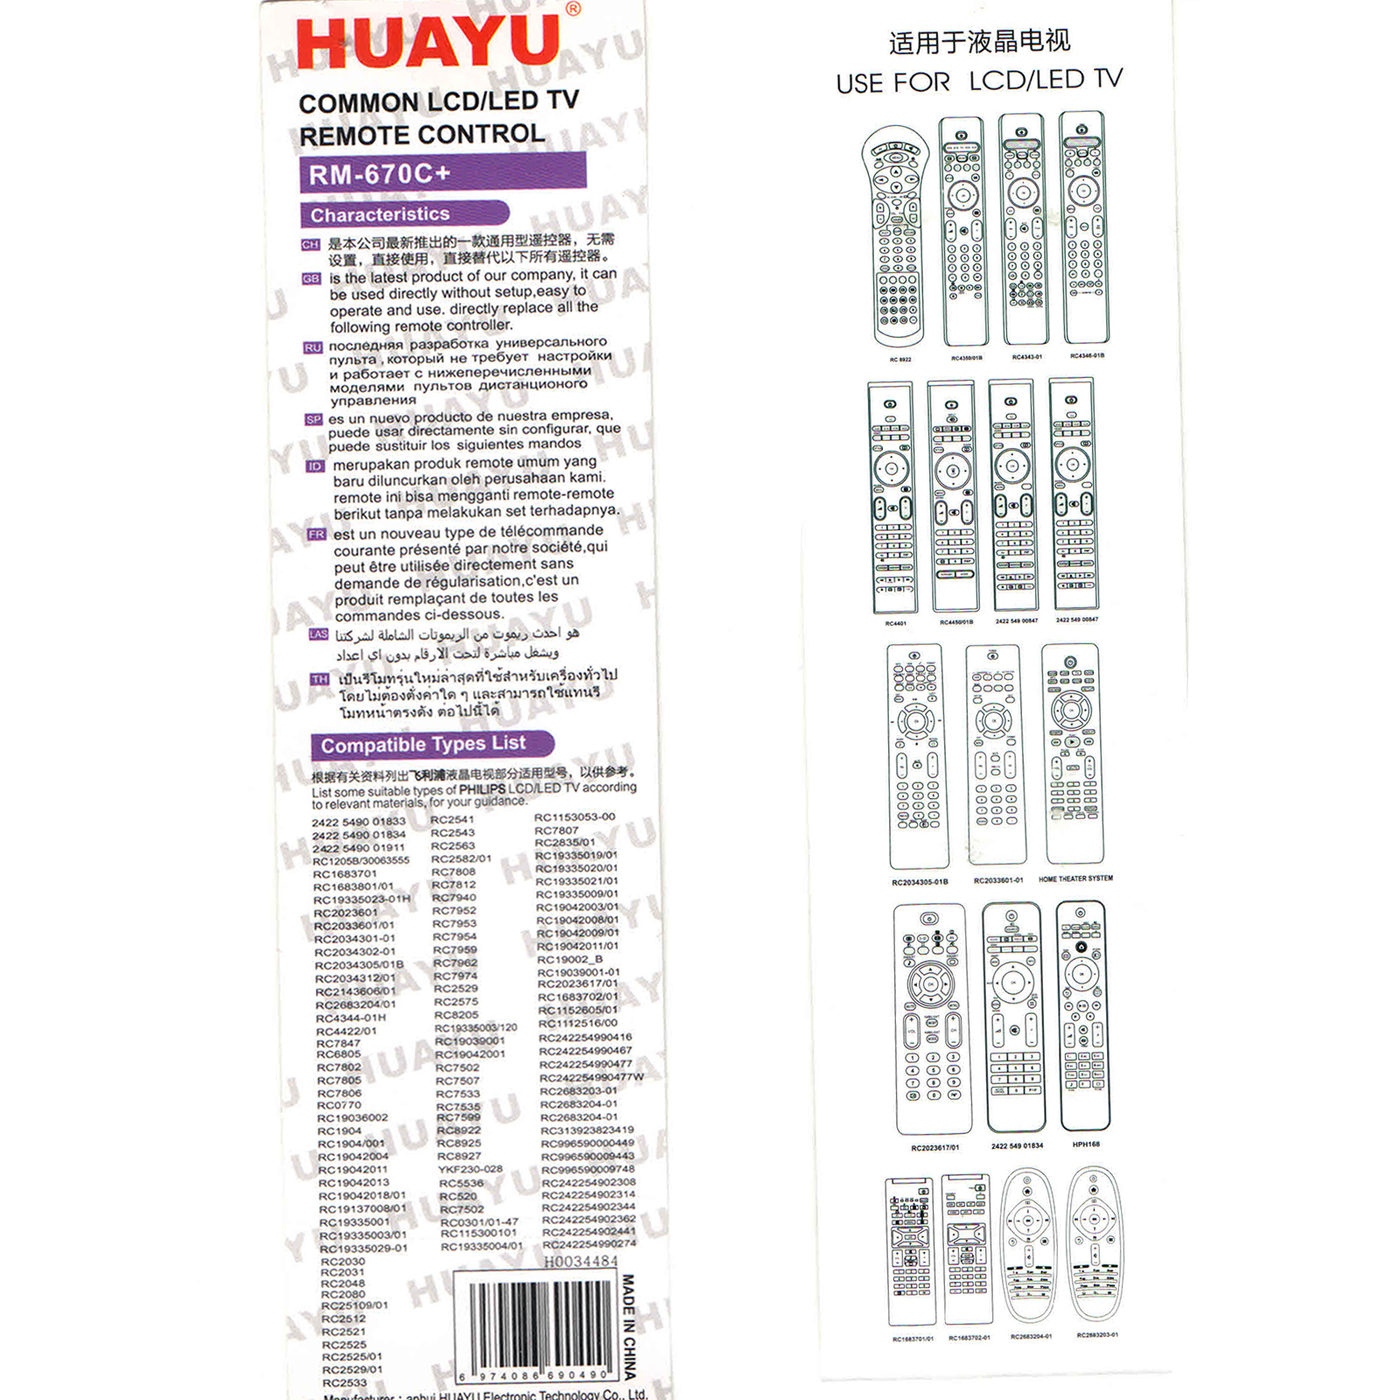 Универсальный пульт huayu коды для телевизоров. Пульт универсальный Huayu для телевизора Philips. ПДУ для ТВ Philips Huayu RM-l1220. Пульт Huayu 670. Универсальный пульт Huayu для Philips TV.